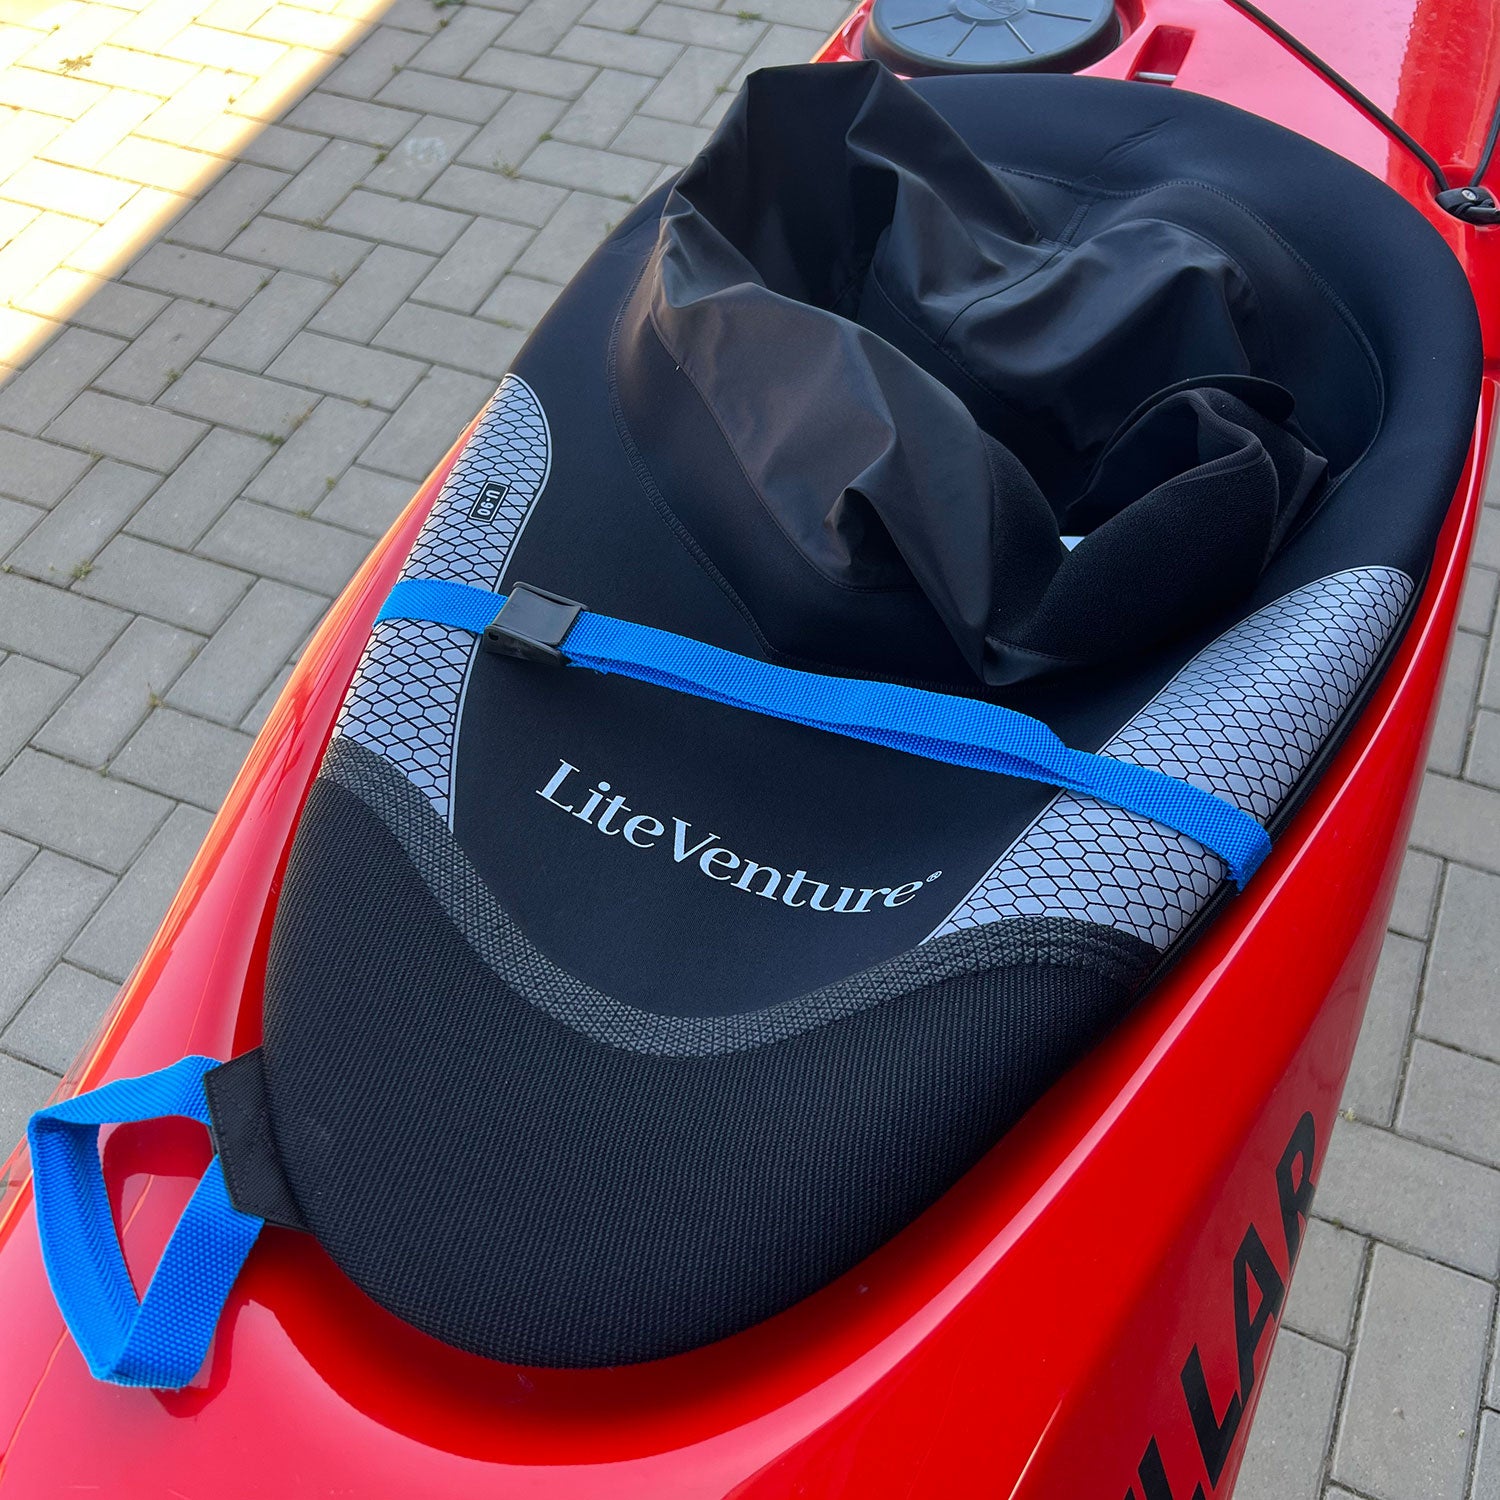 Couverture de kayak pour kayak de mer